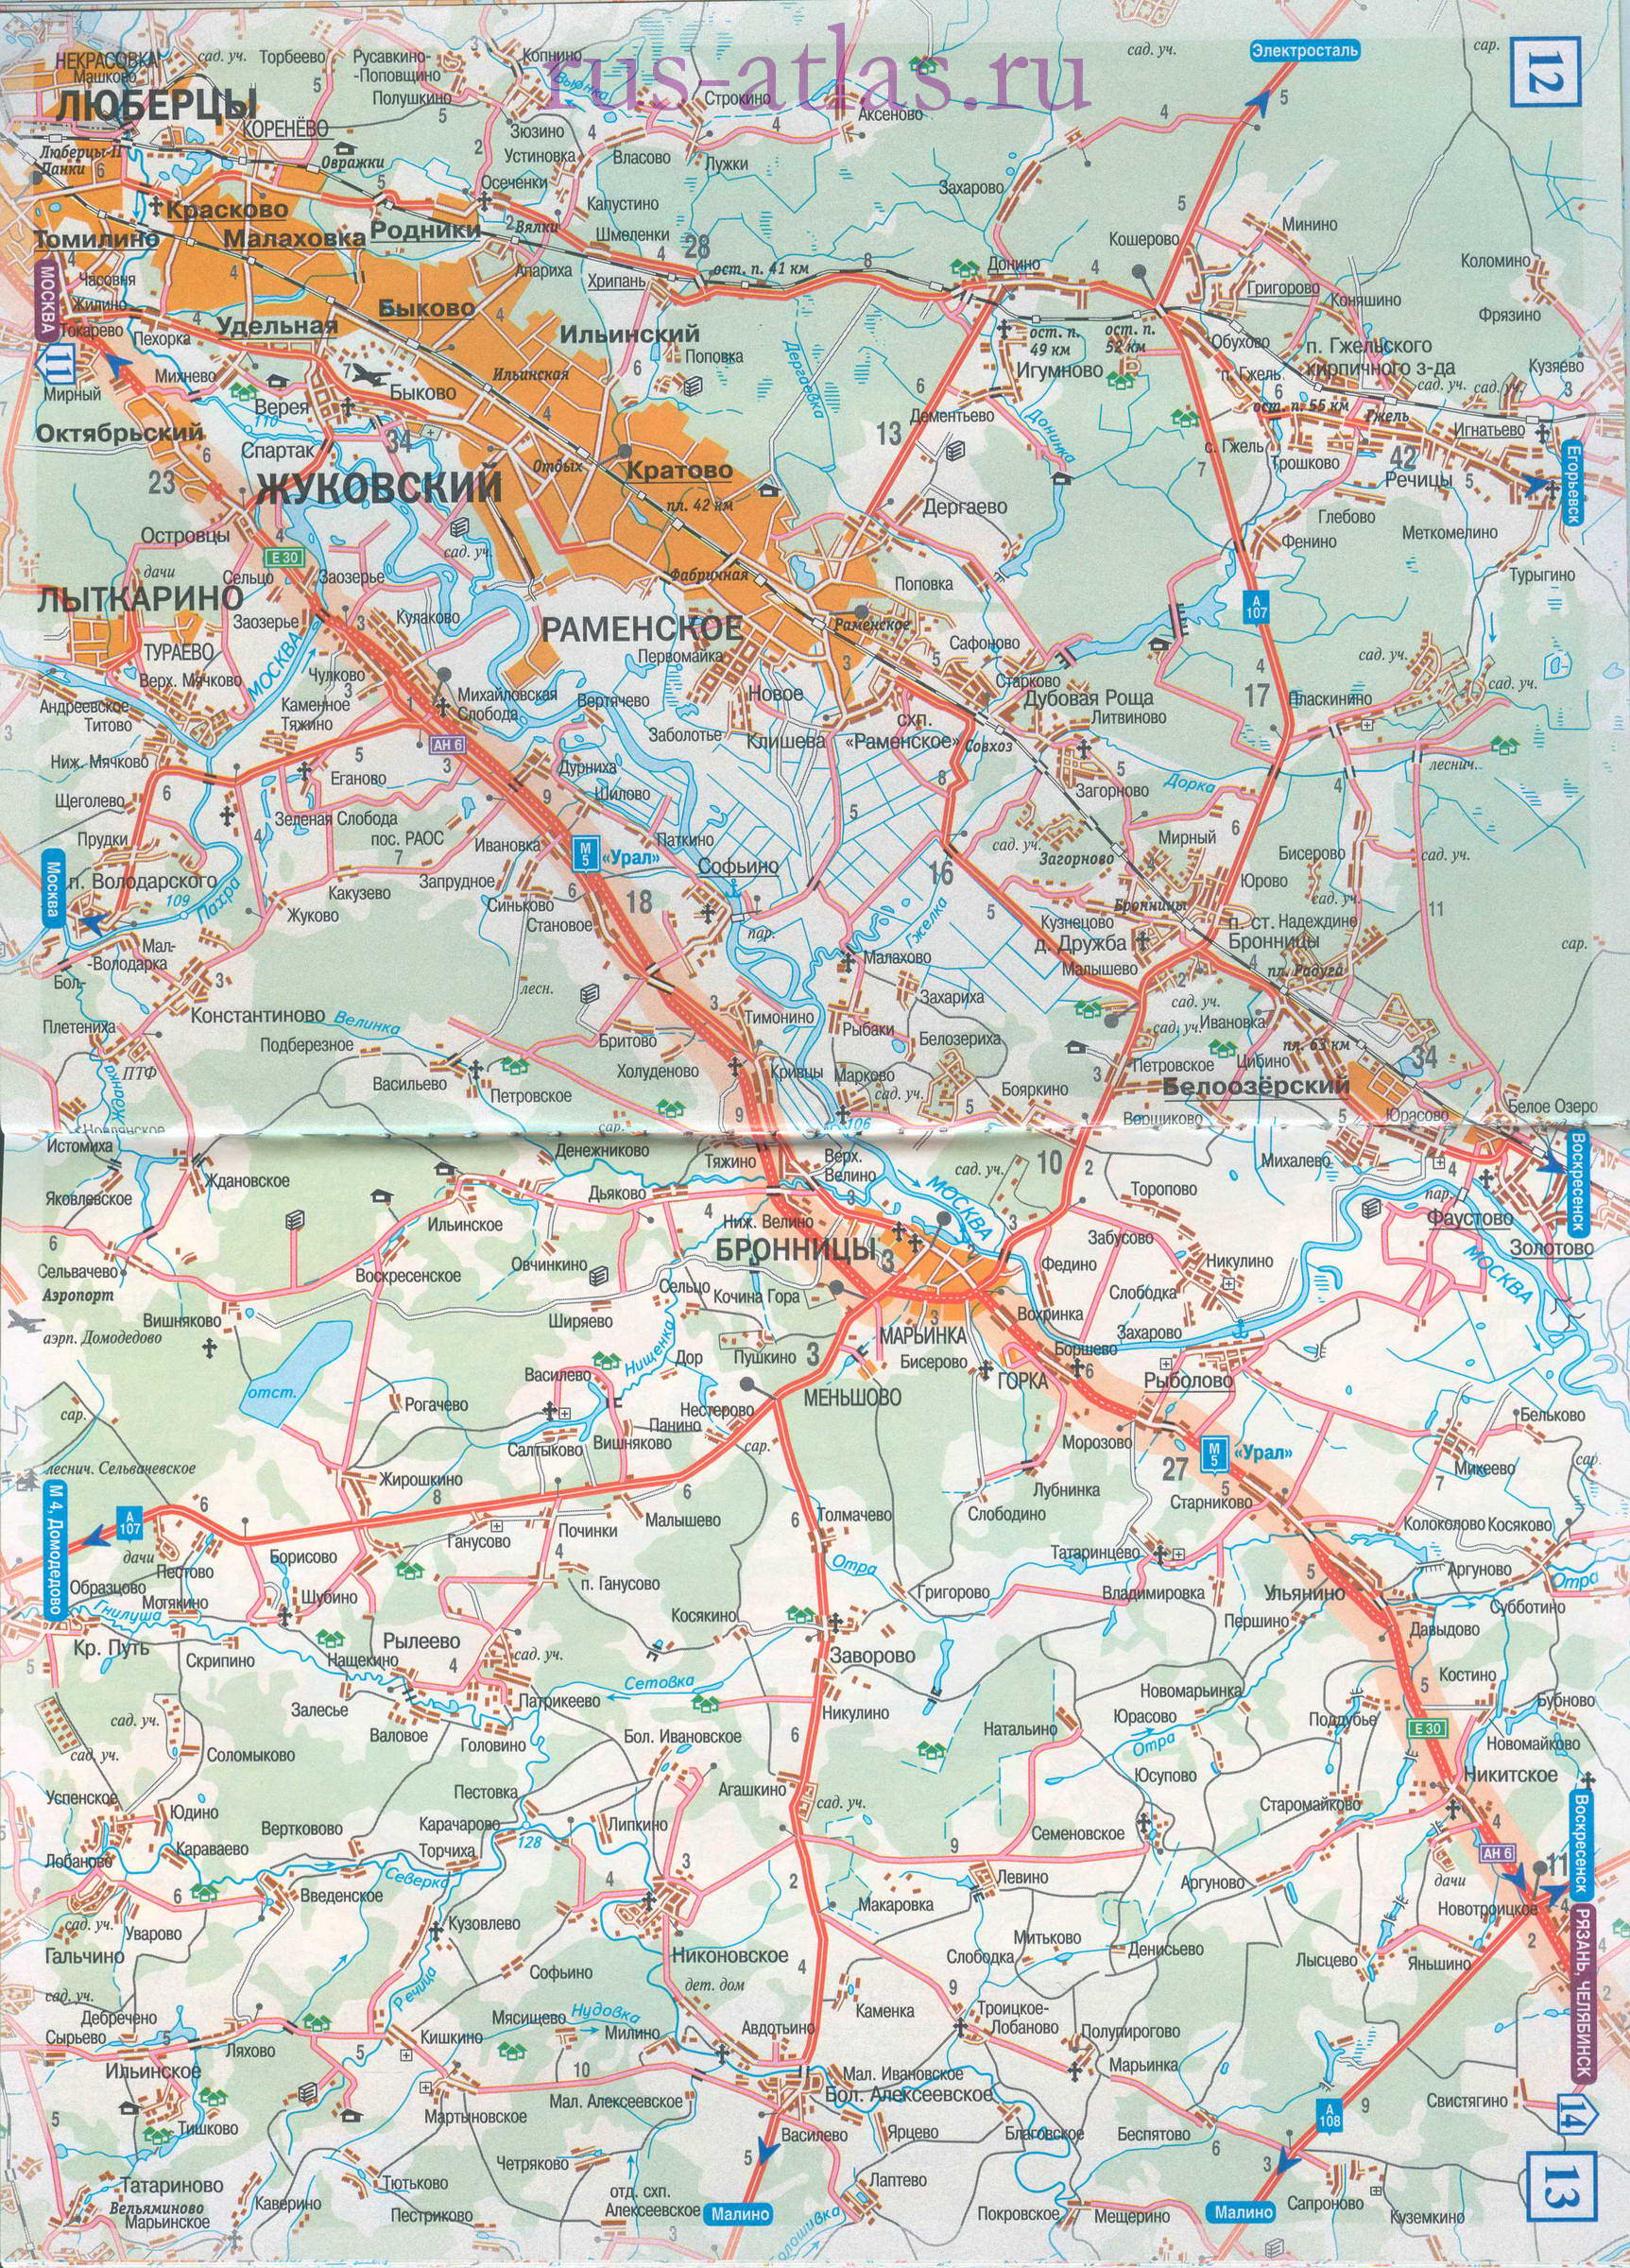 Карта дороги Москва Рязань. Детальная крупномасштабная карта трассы М5 от Москвы до Рязани, A0 - 